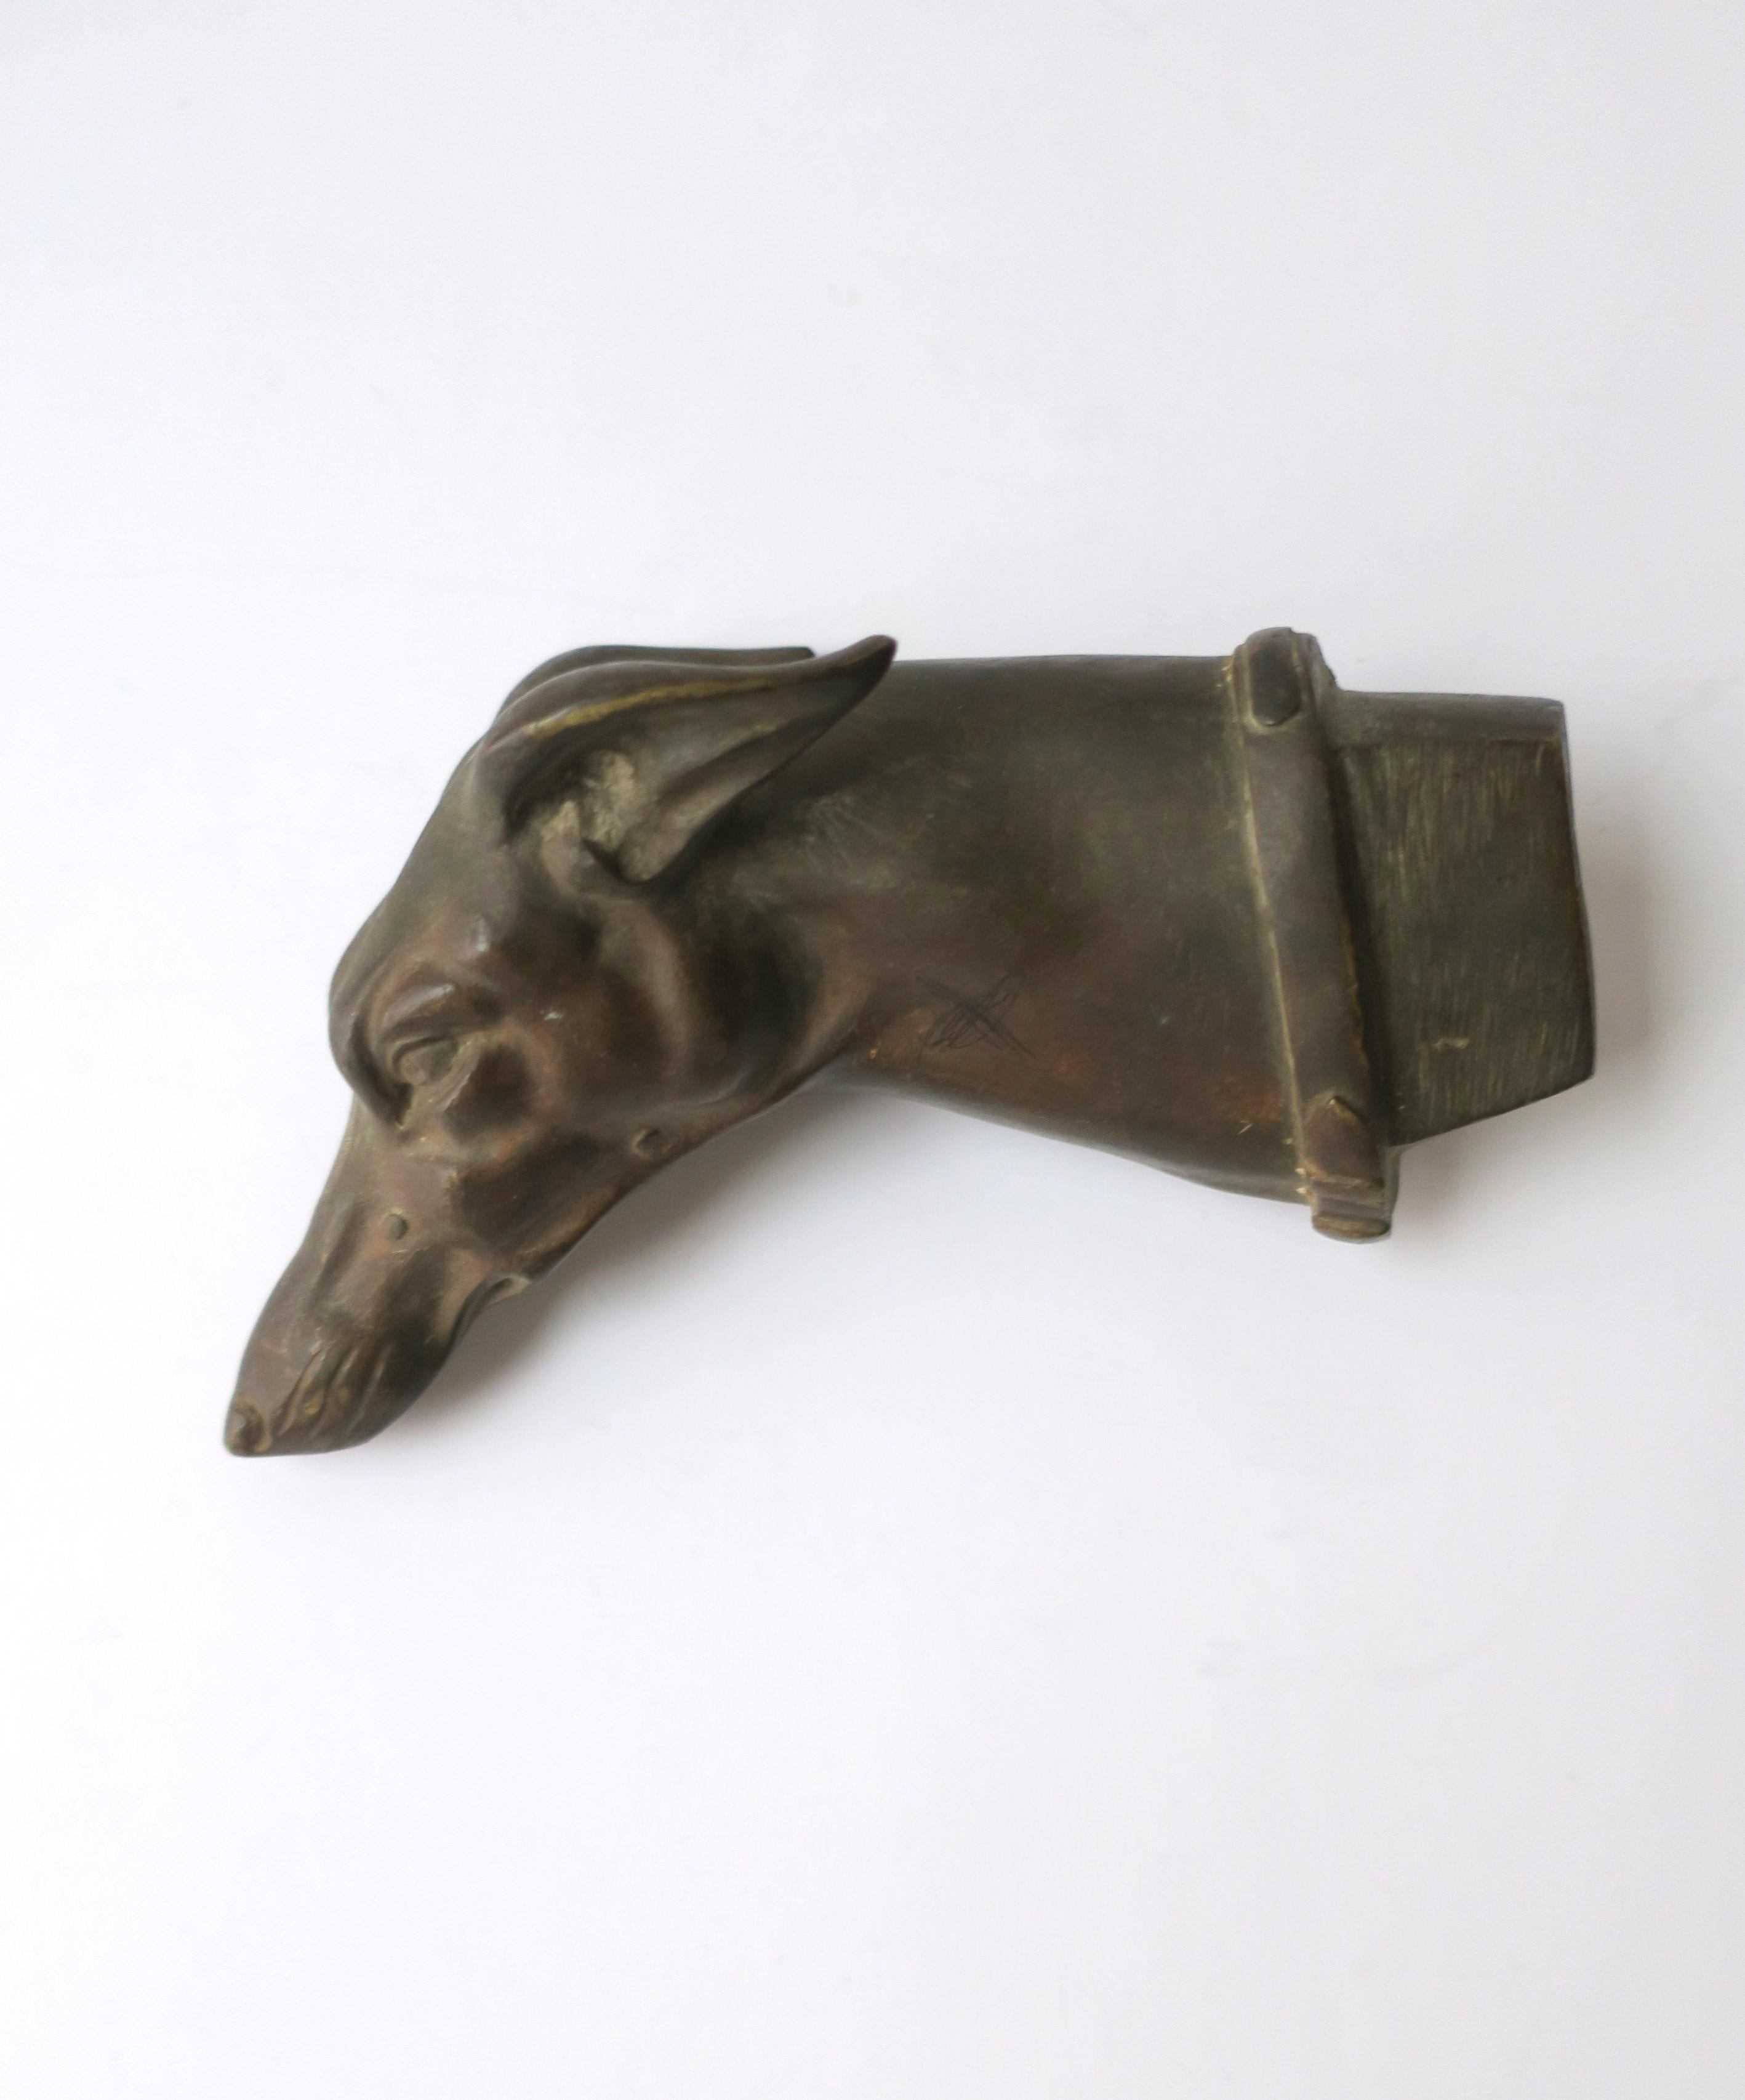 Schöner, massiver Bronzekopf eines Windhundes oder Whippets, Art Deco, ca. frühes 20. Jahrhundert, Europa. England oder Frankreich. Dieser schwere Hund aus Bronze hat ein detailliertes Gesicht (Schnauze, Ohren, Augen) und ein Halsband. Ein